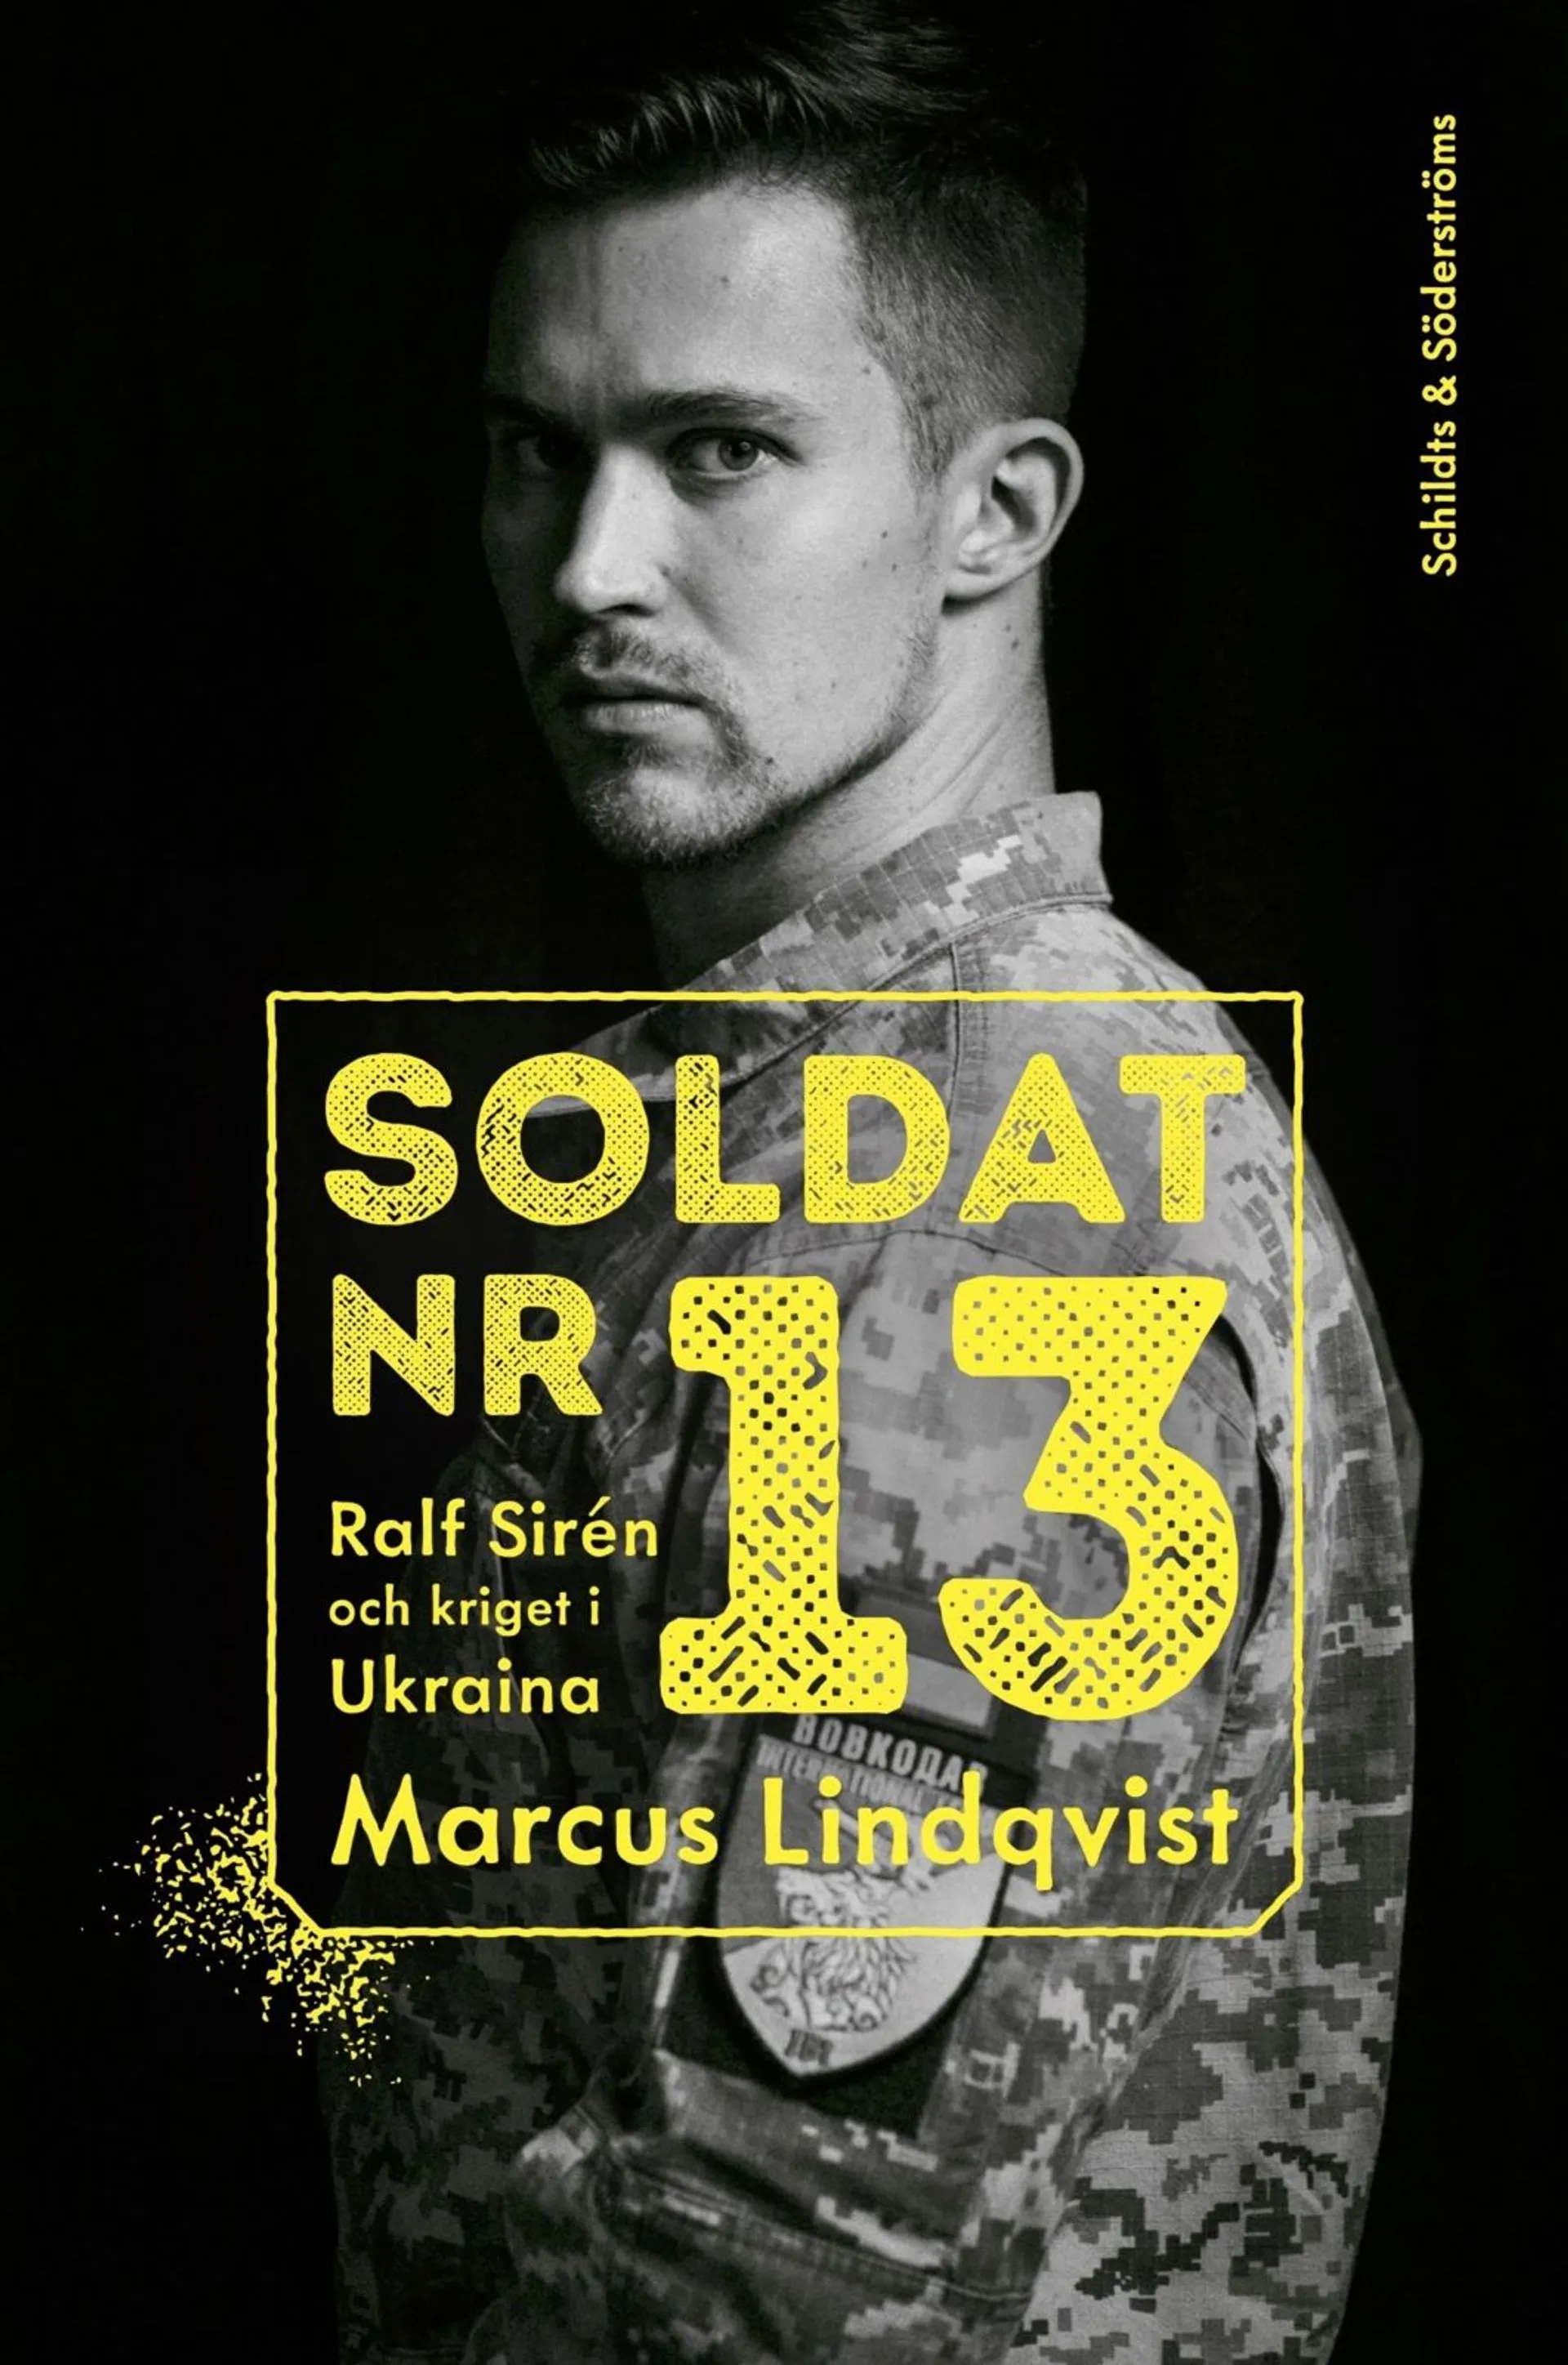 Lindqvist, Soldat nr 13 - Ralf Sirén och kriget i Ukraina